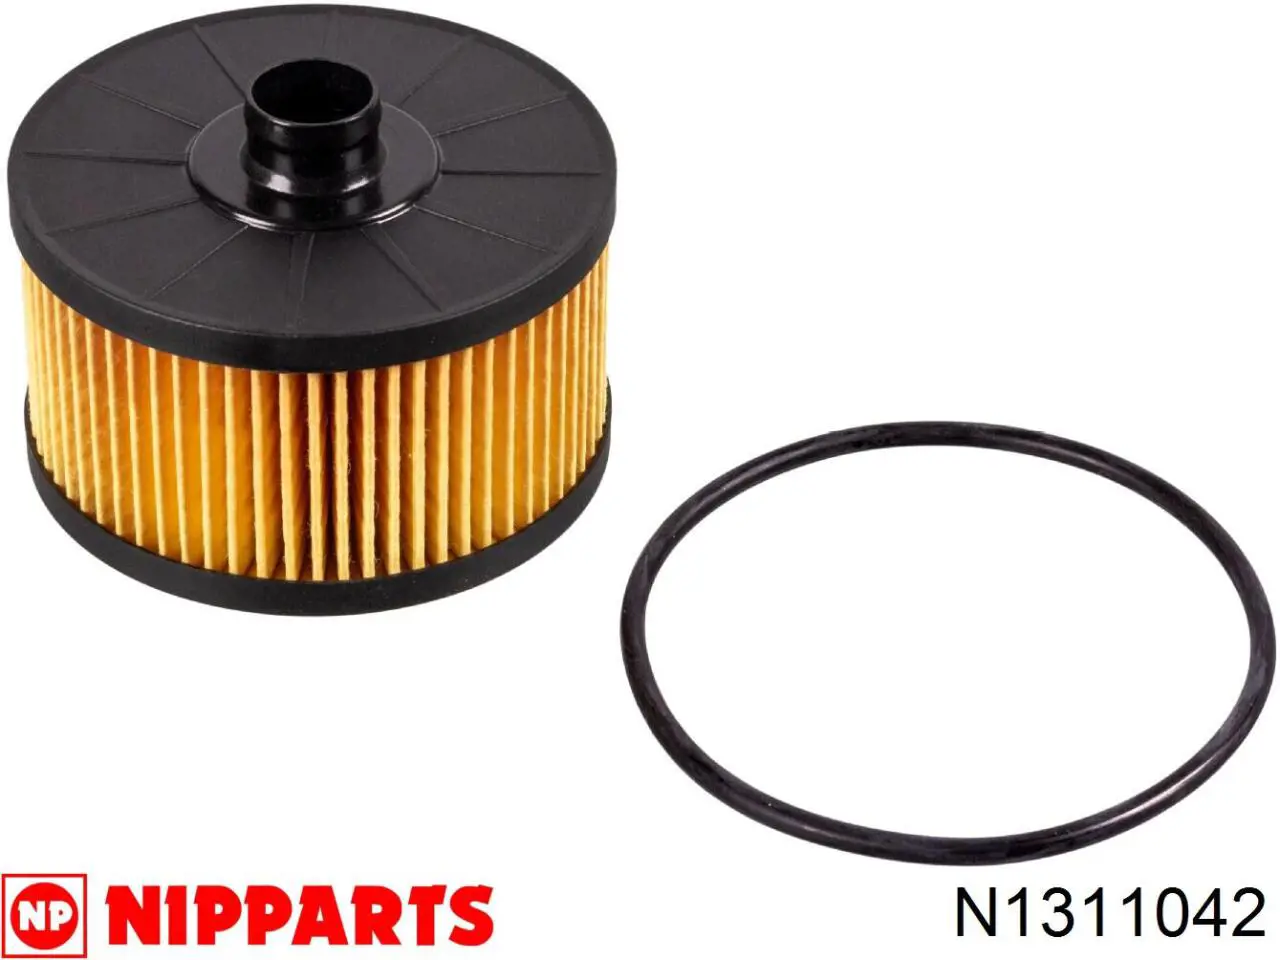 N1311042 Nipparts filtro de aceite